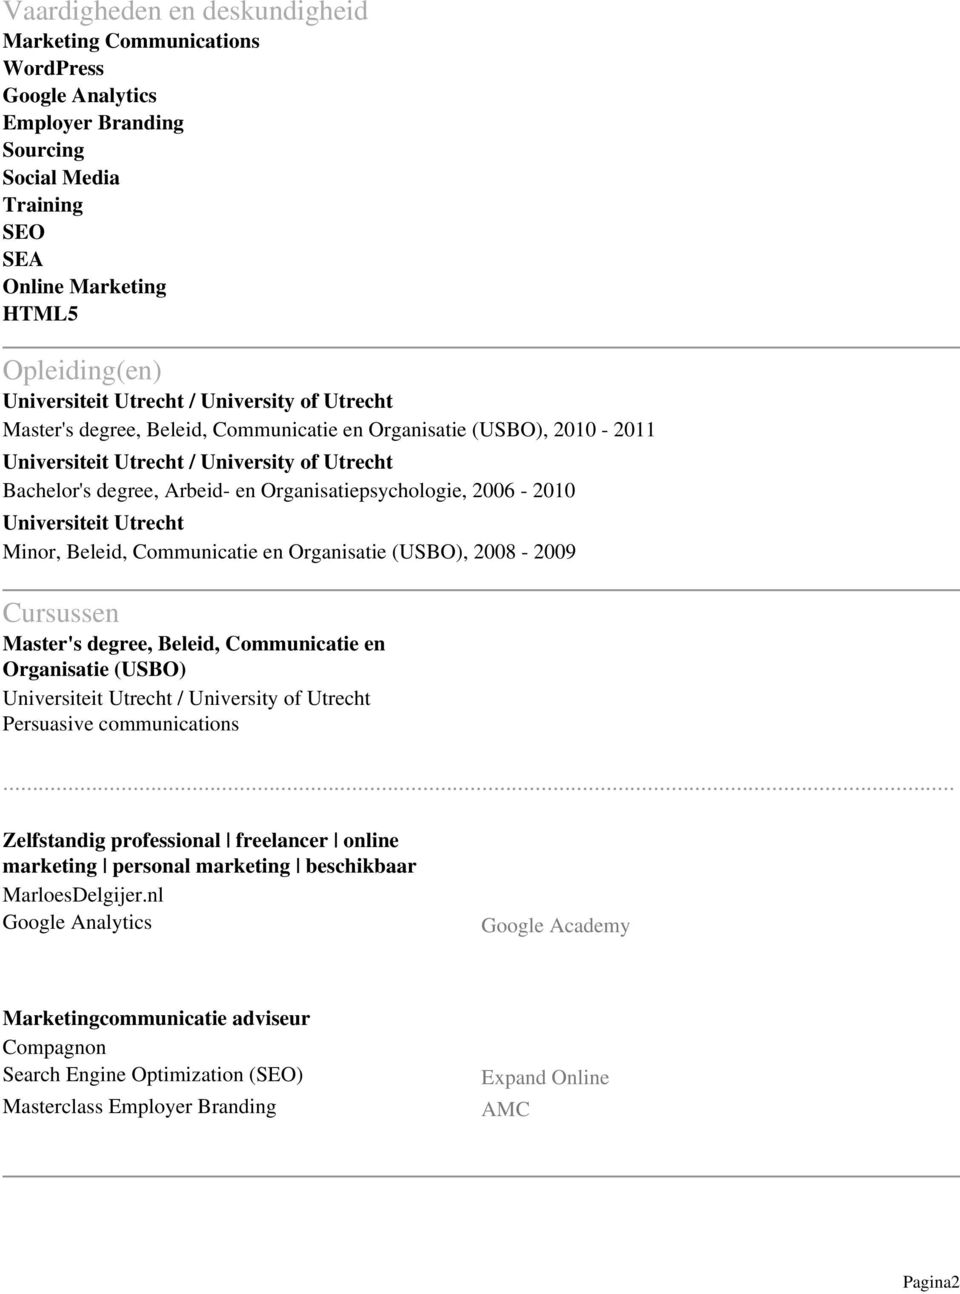 Organisatie (USBO), 2008-2009 Cursussen Master's degree, Beleid, Communicatie en Organisatie (USBO) Persuasive communications.